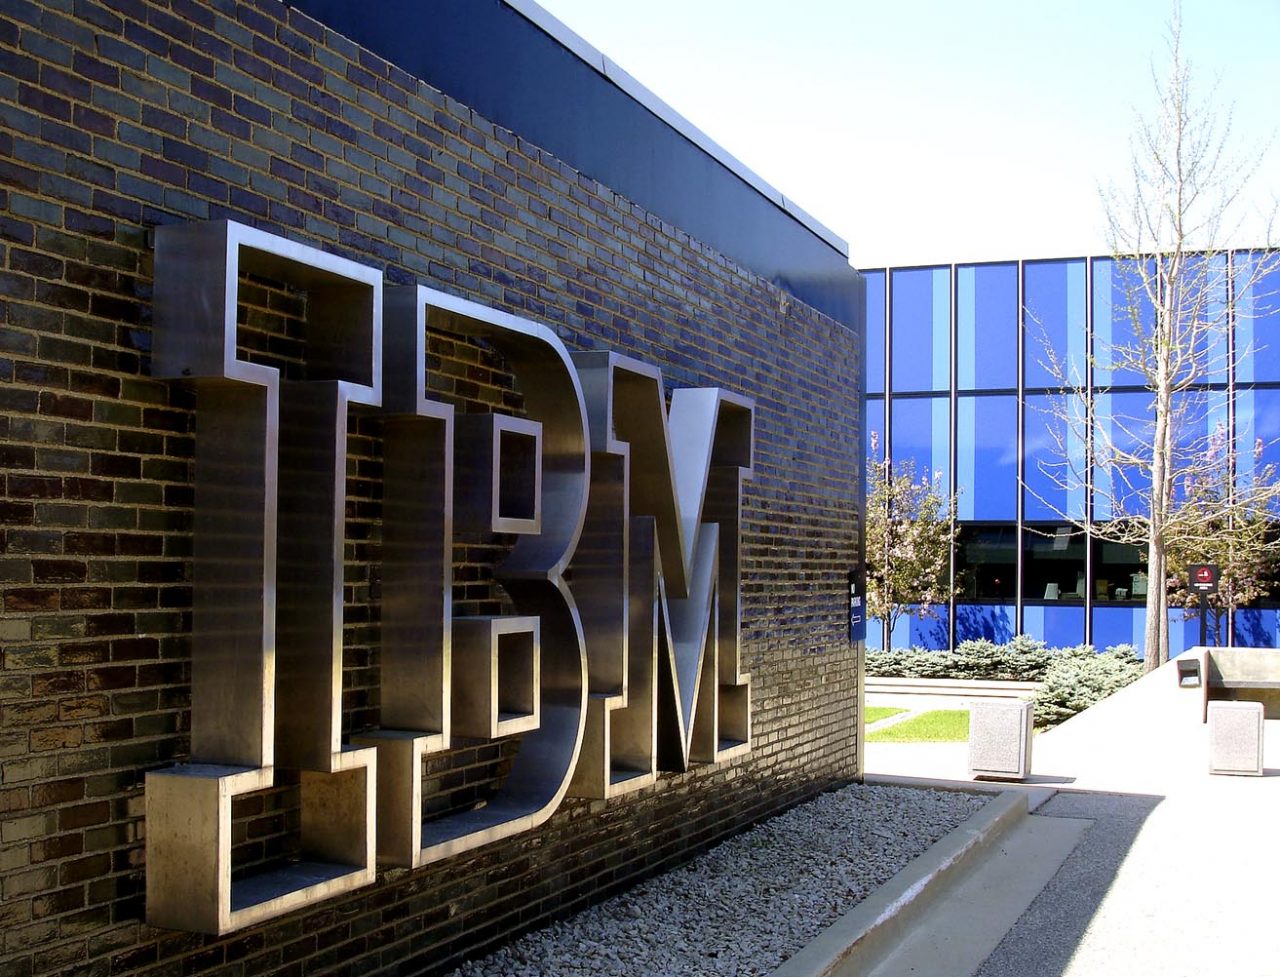 ՖԼԵՇ ՏԵԽՆՈԼՈԳԻԱՆԵՐԻ ԶԱՐԳԱՑՄԱՆ ՀԱՄԱՐ IBM-Ը ՆԵՐԴՐԵԼ Է 1 ՄԼՐԴ ԴՈԼԱՐ